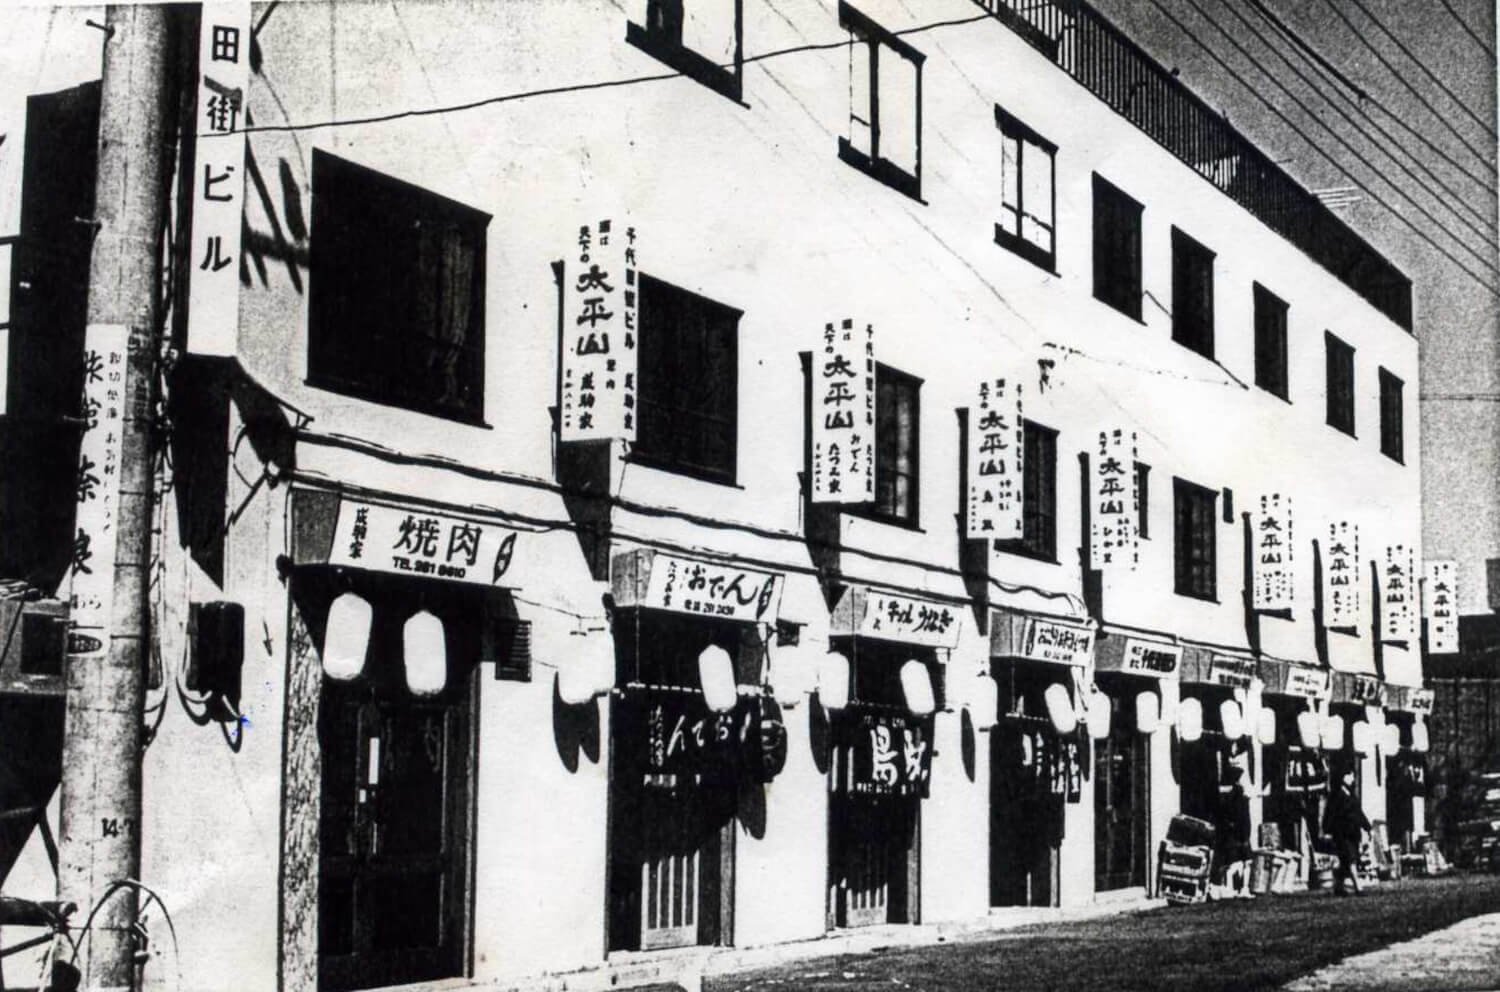 昭和40年、完成したビル。看板に秋田の地酒「太平山」の名が見える。（写真提供：『鳥政』）。